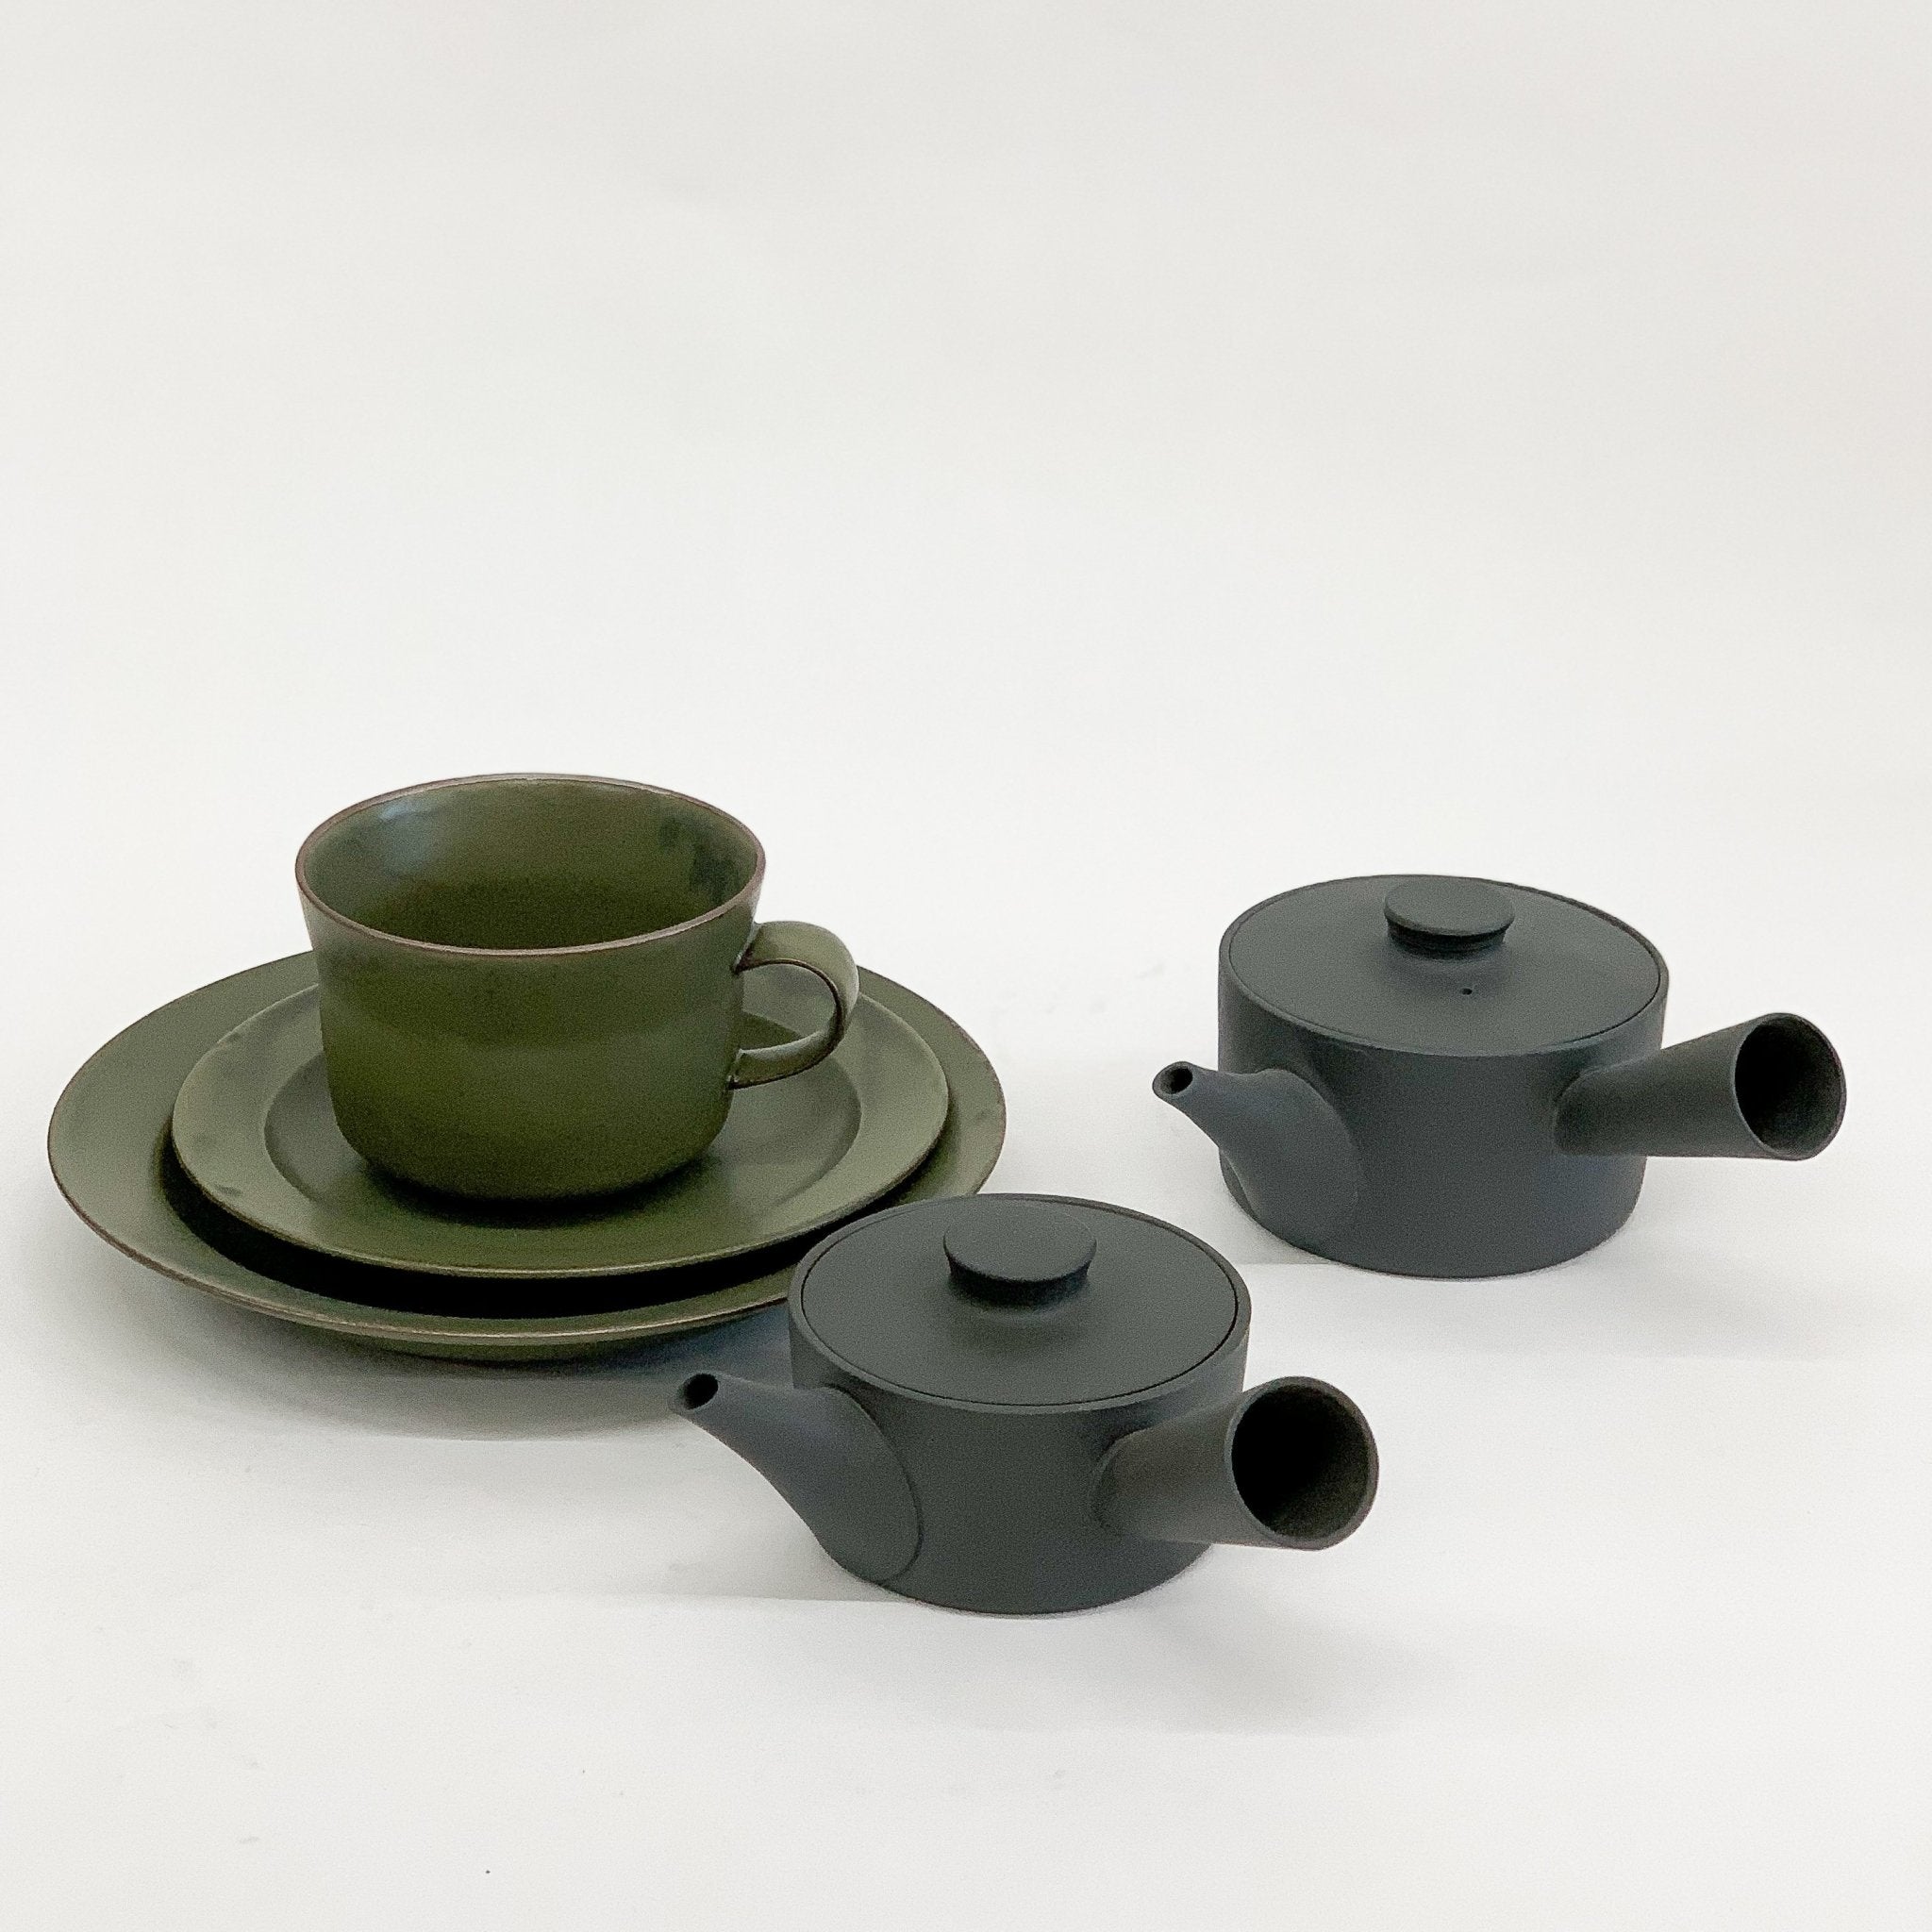 Handmade Ceramic Tea Pot/Kyu-su by Yumiko Iihoshi - tortoise general store